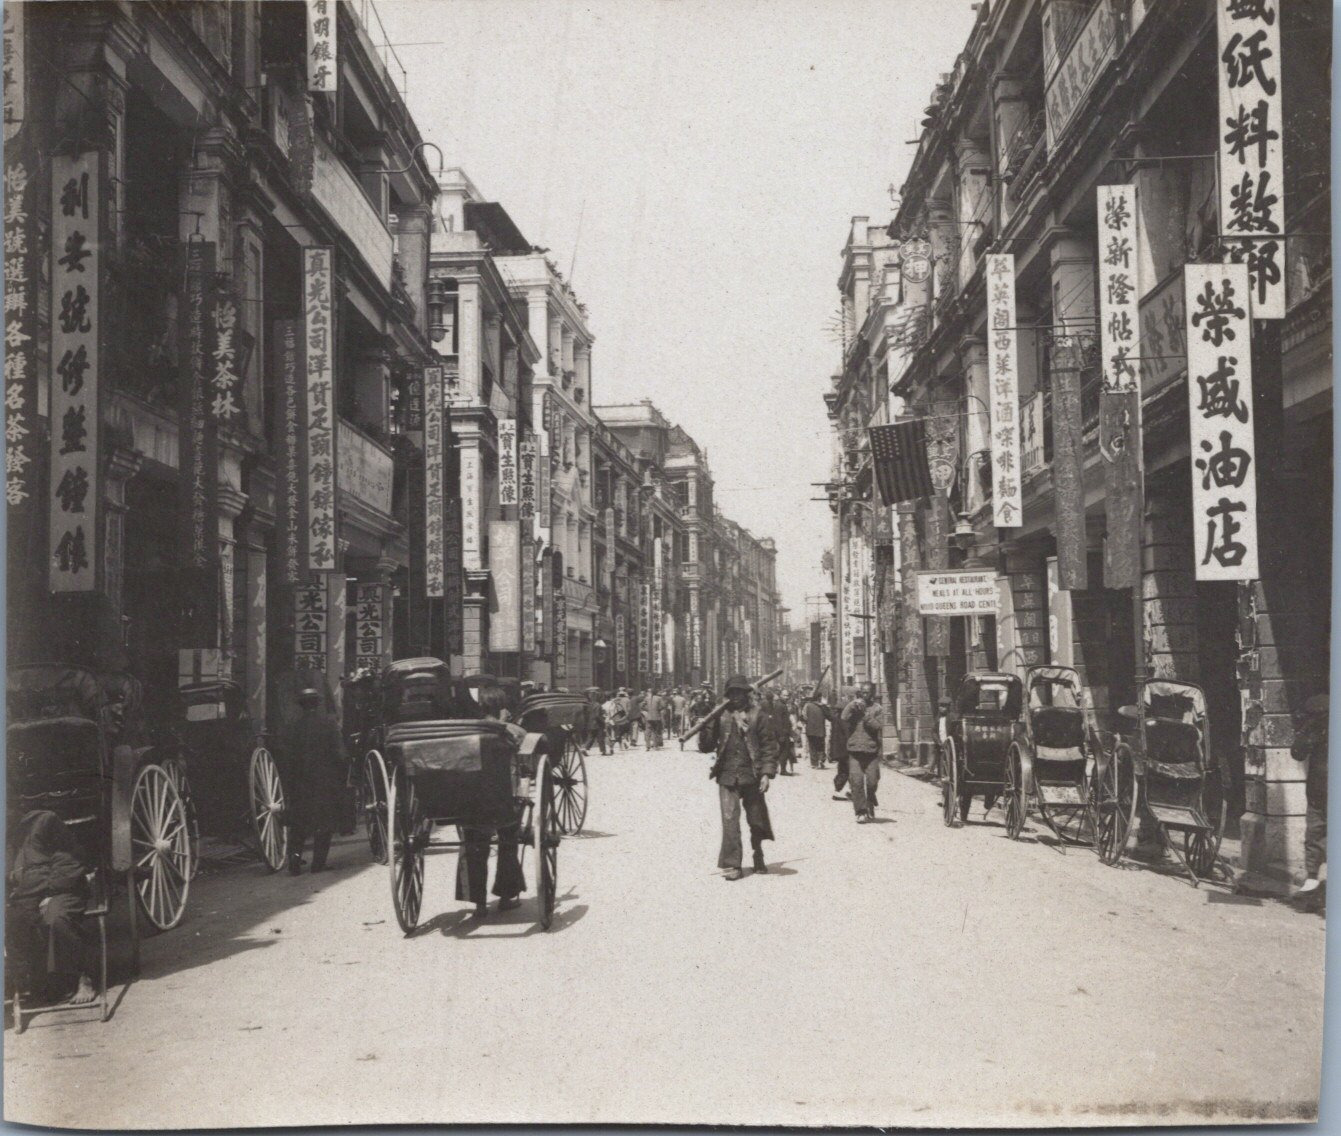 Hong Kong, One Street, Vintage Print, ca.1900 Vintage Print Vintage Print